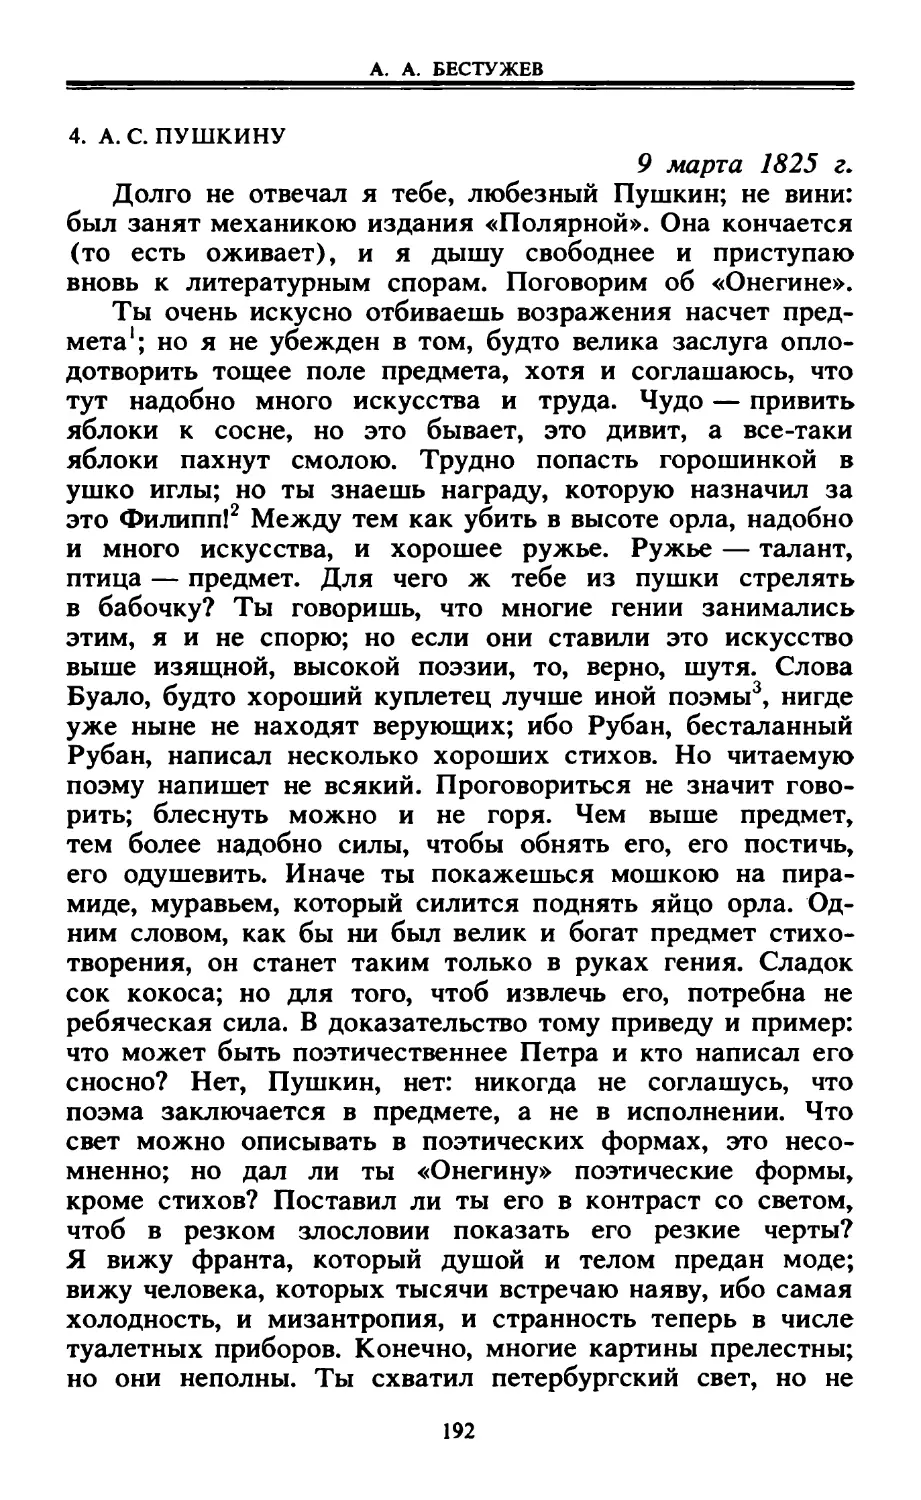 4. А. С. Пушкину. 9 марта 1825 г.